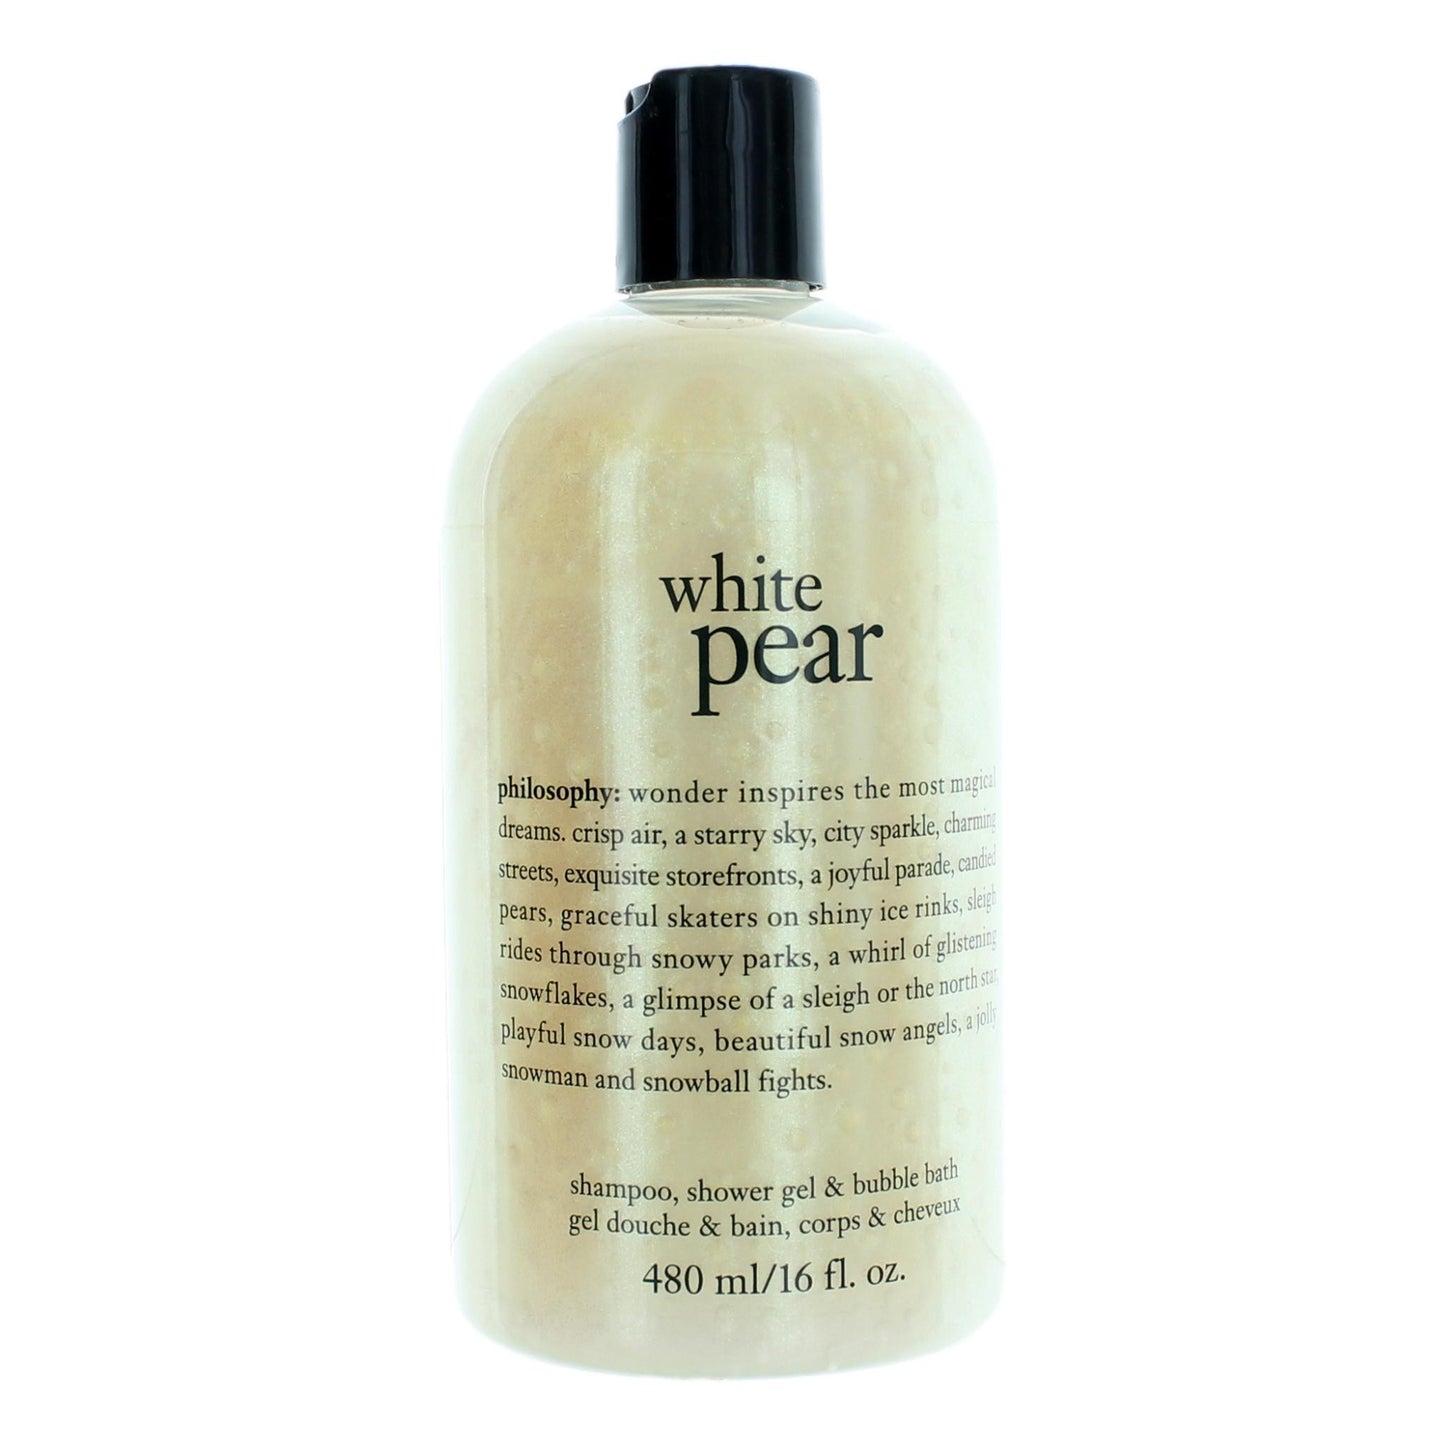 Bottle of White Pear by Philosophy, 16 oz Shampoo, Shower Gel & Bubble Bath for Women